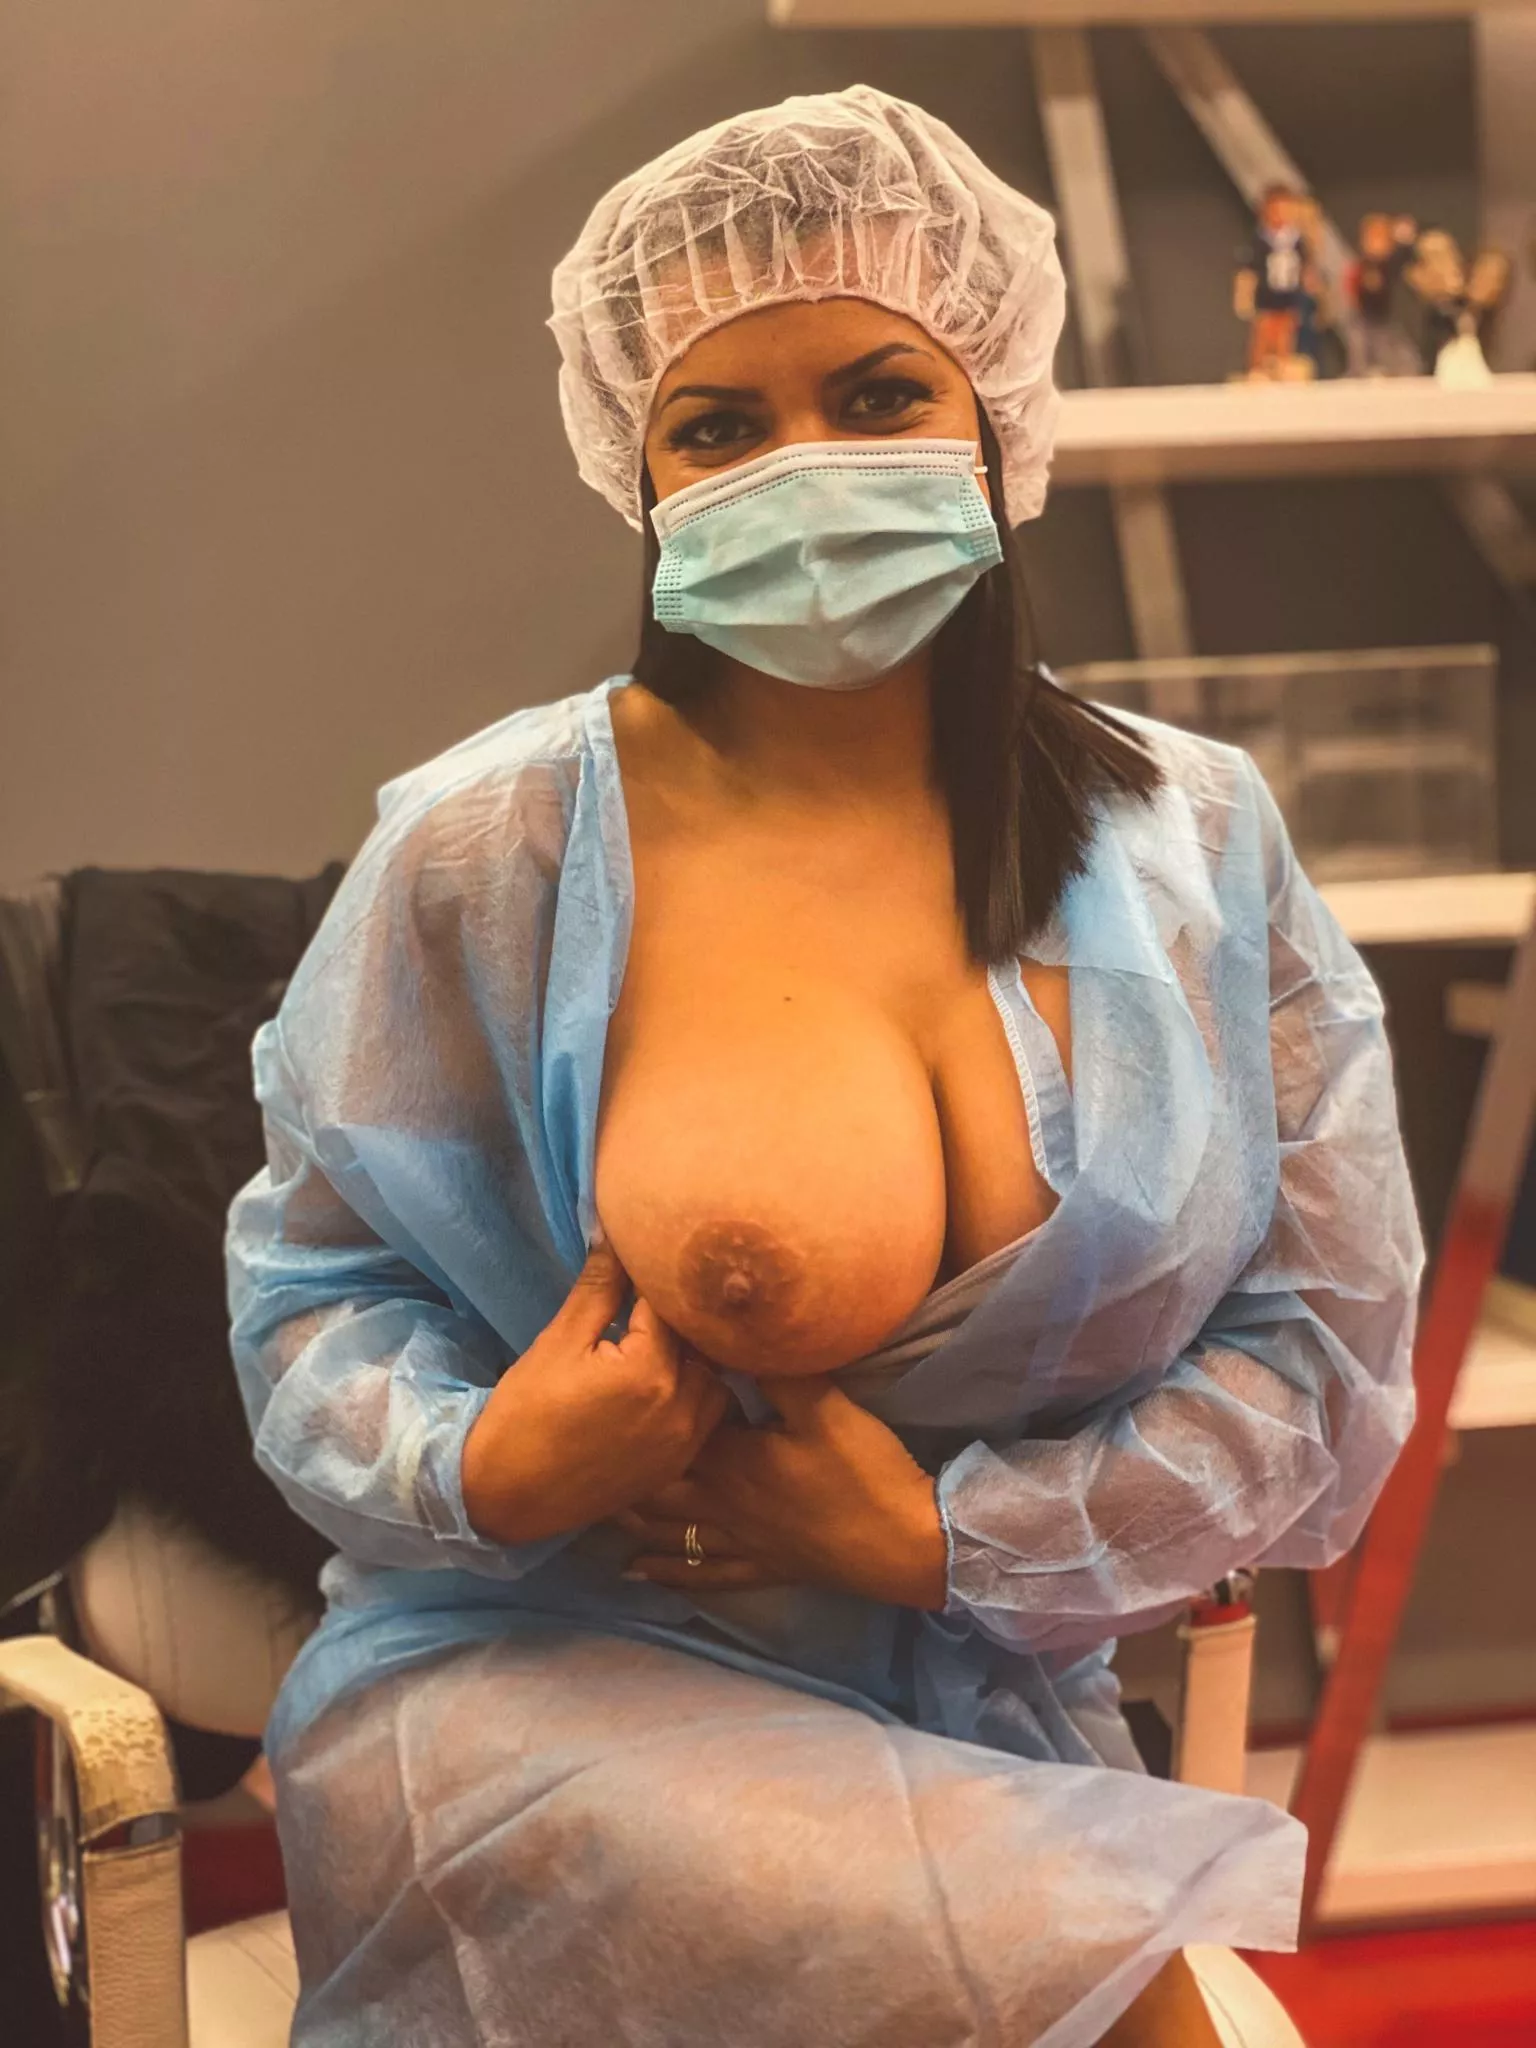 Nurse Nudes